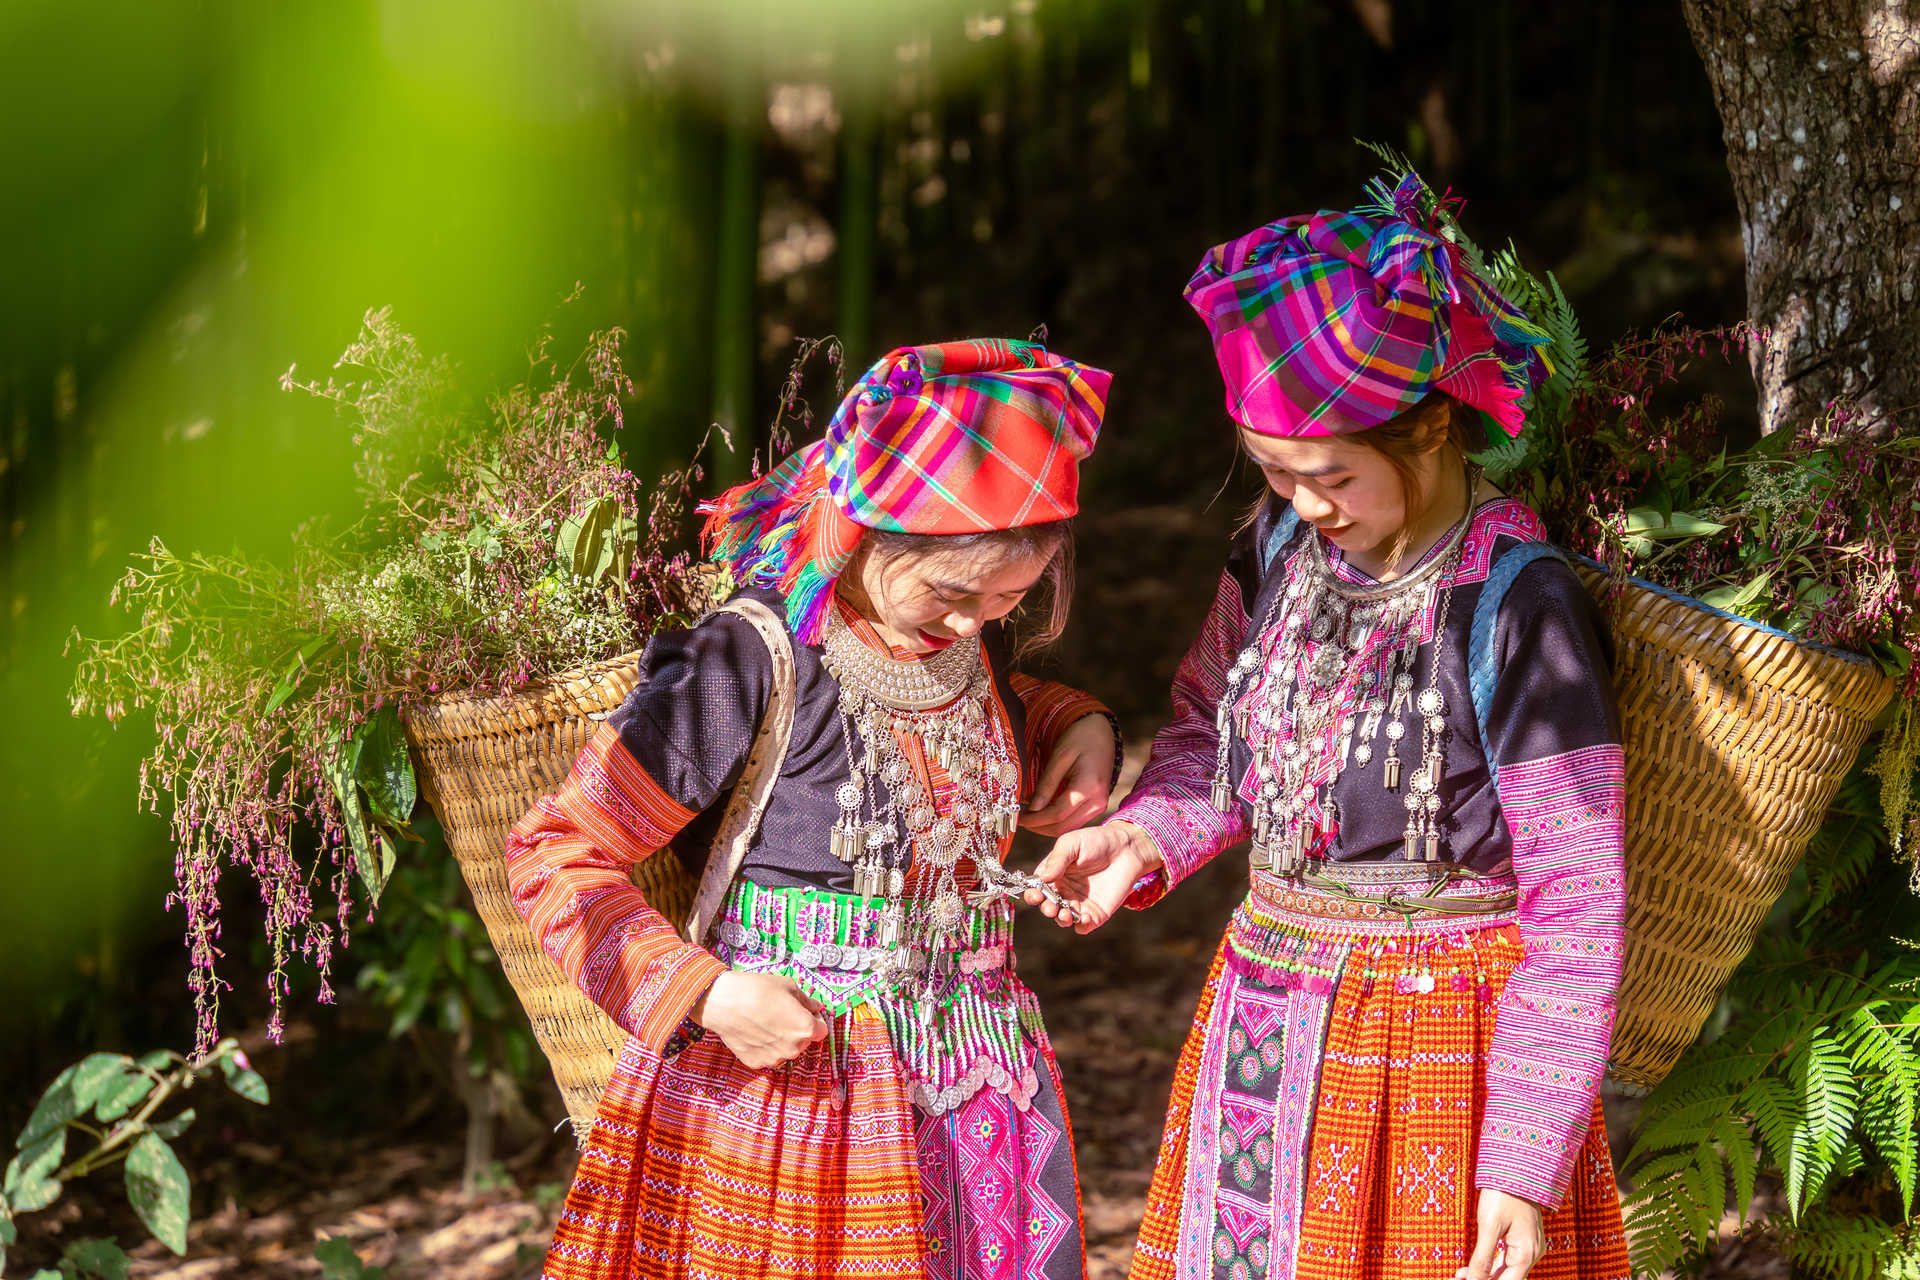 Femmes de l'ethnie Hmong dans le nord du Vietnam en tenue traditionnelle